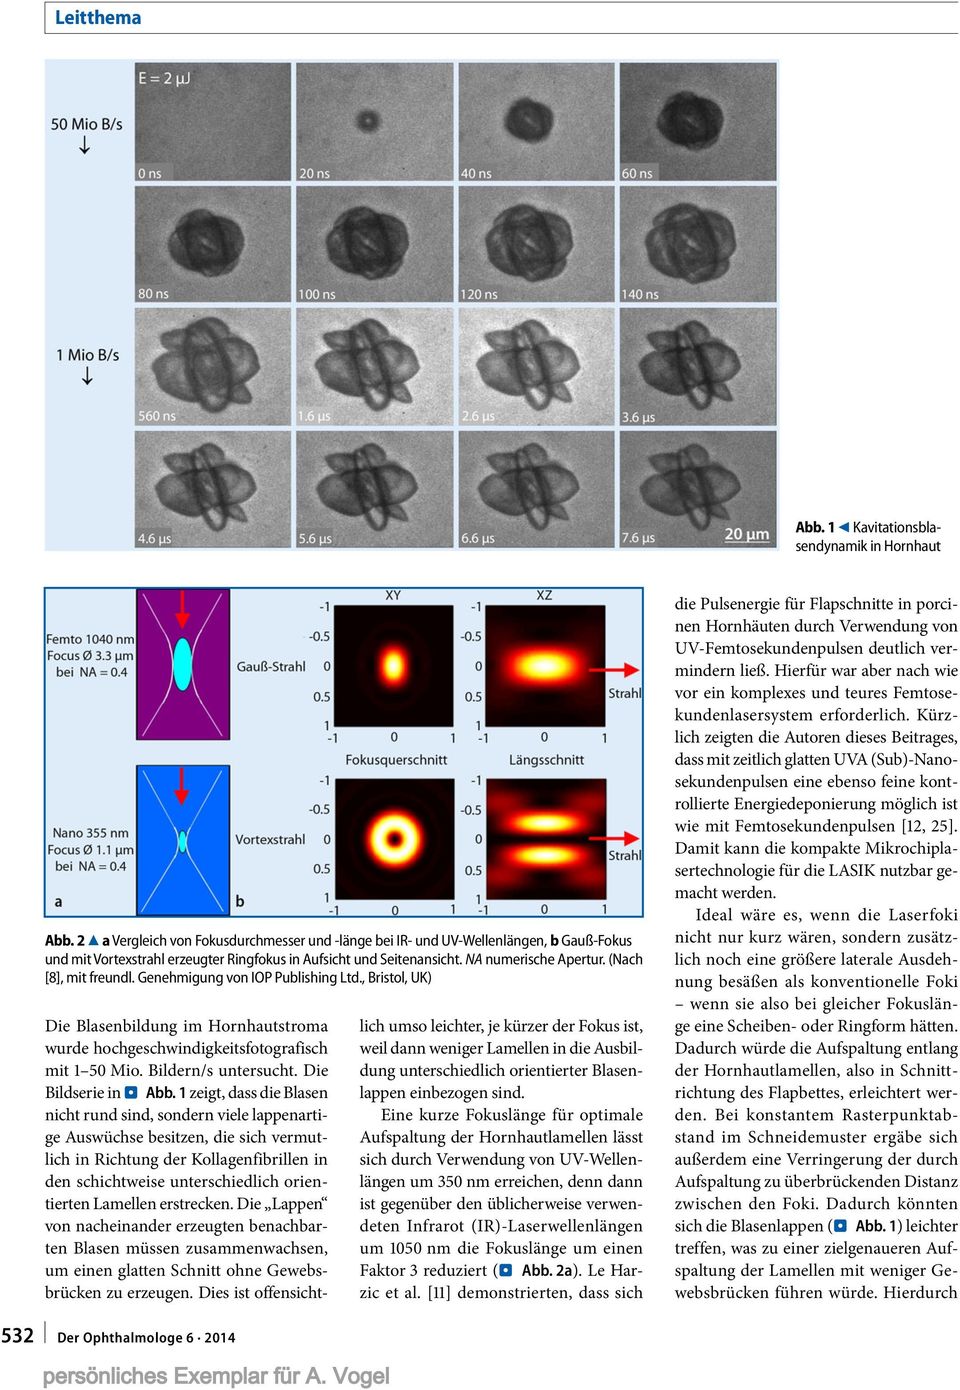 (Nach [8], mit freundl. Genehmigung von IOP Publishing Ltd., Bristol, UK) Die Blasenbildung im Hornhautstroma wurde hochgeschwindigkeitsfotografisch mit 1 50 Mio. Bildern/s untersucht.